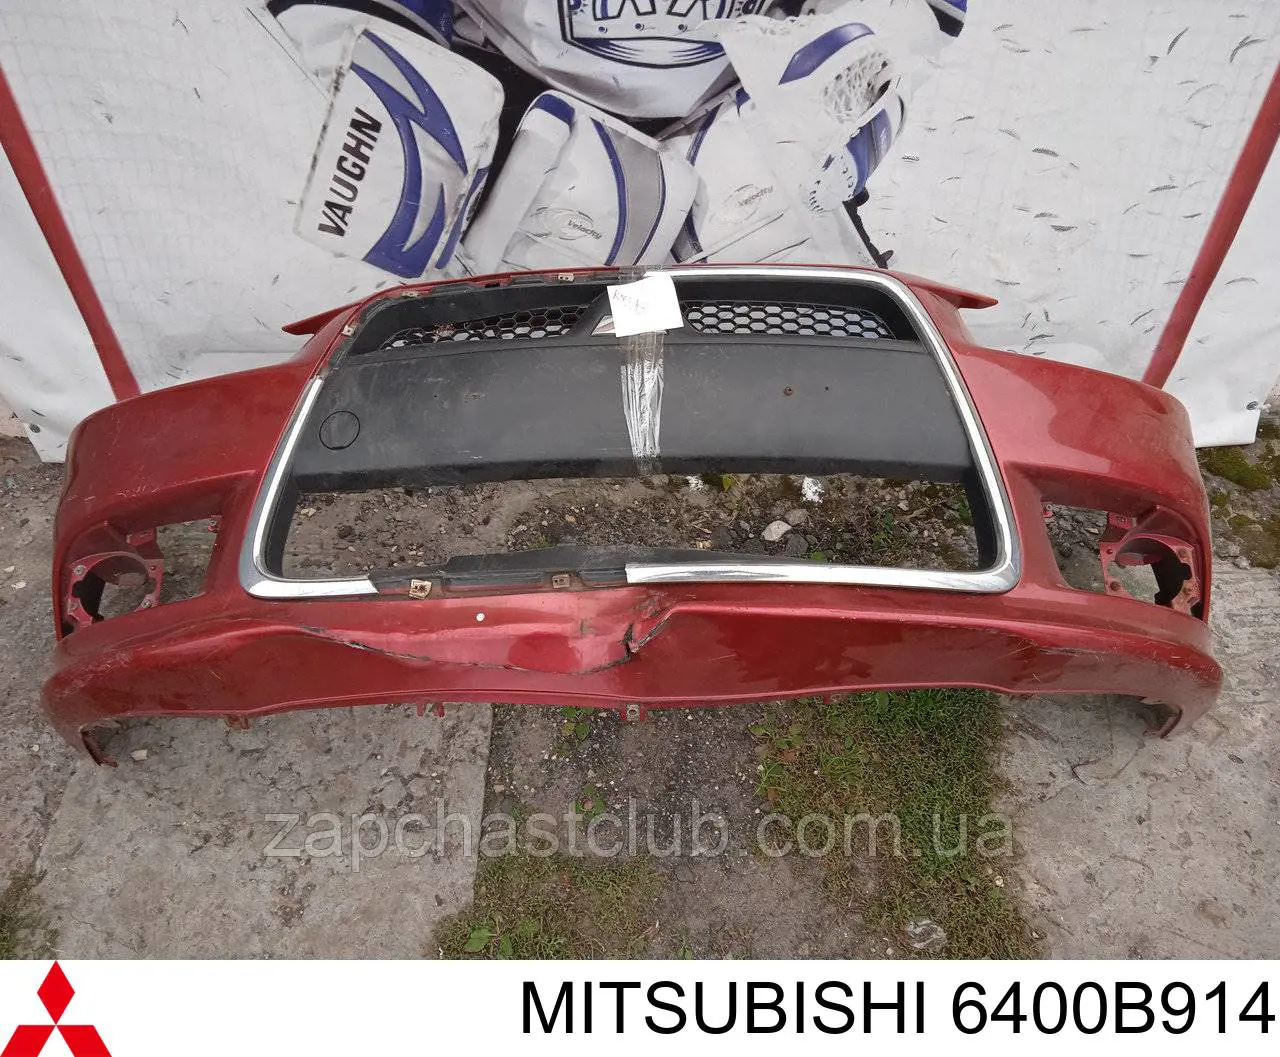 6400B378 Mitsubishi передний бампер